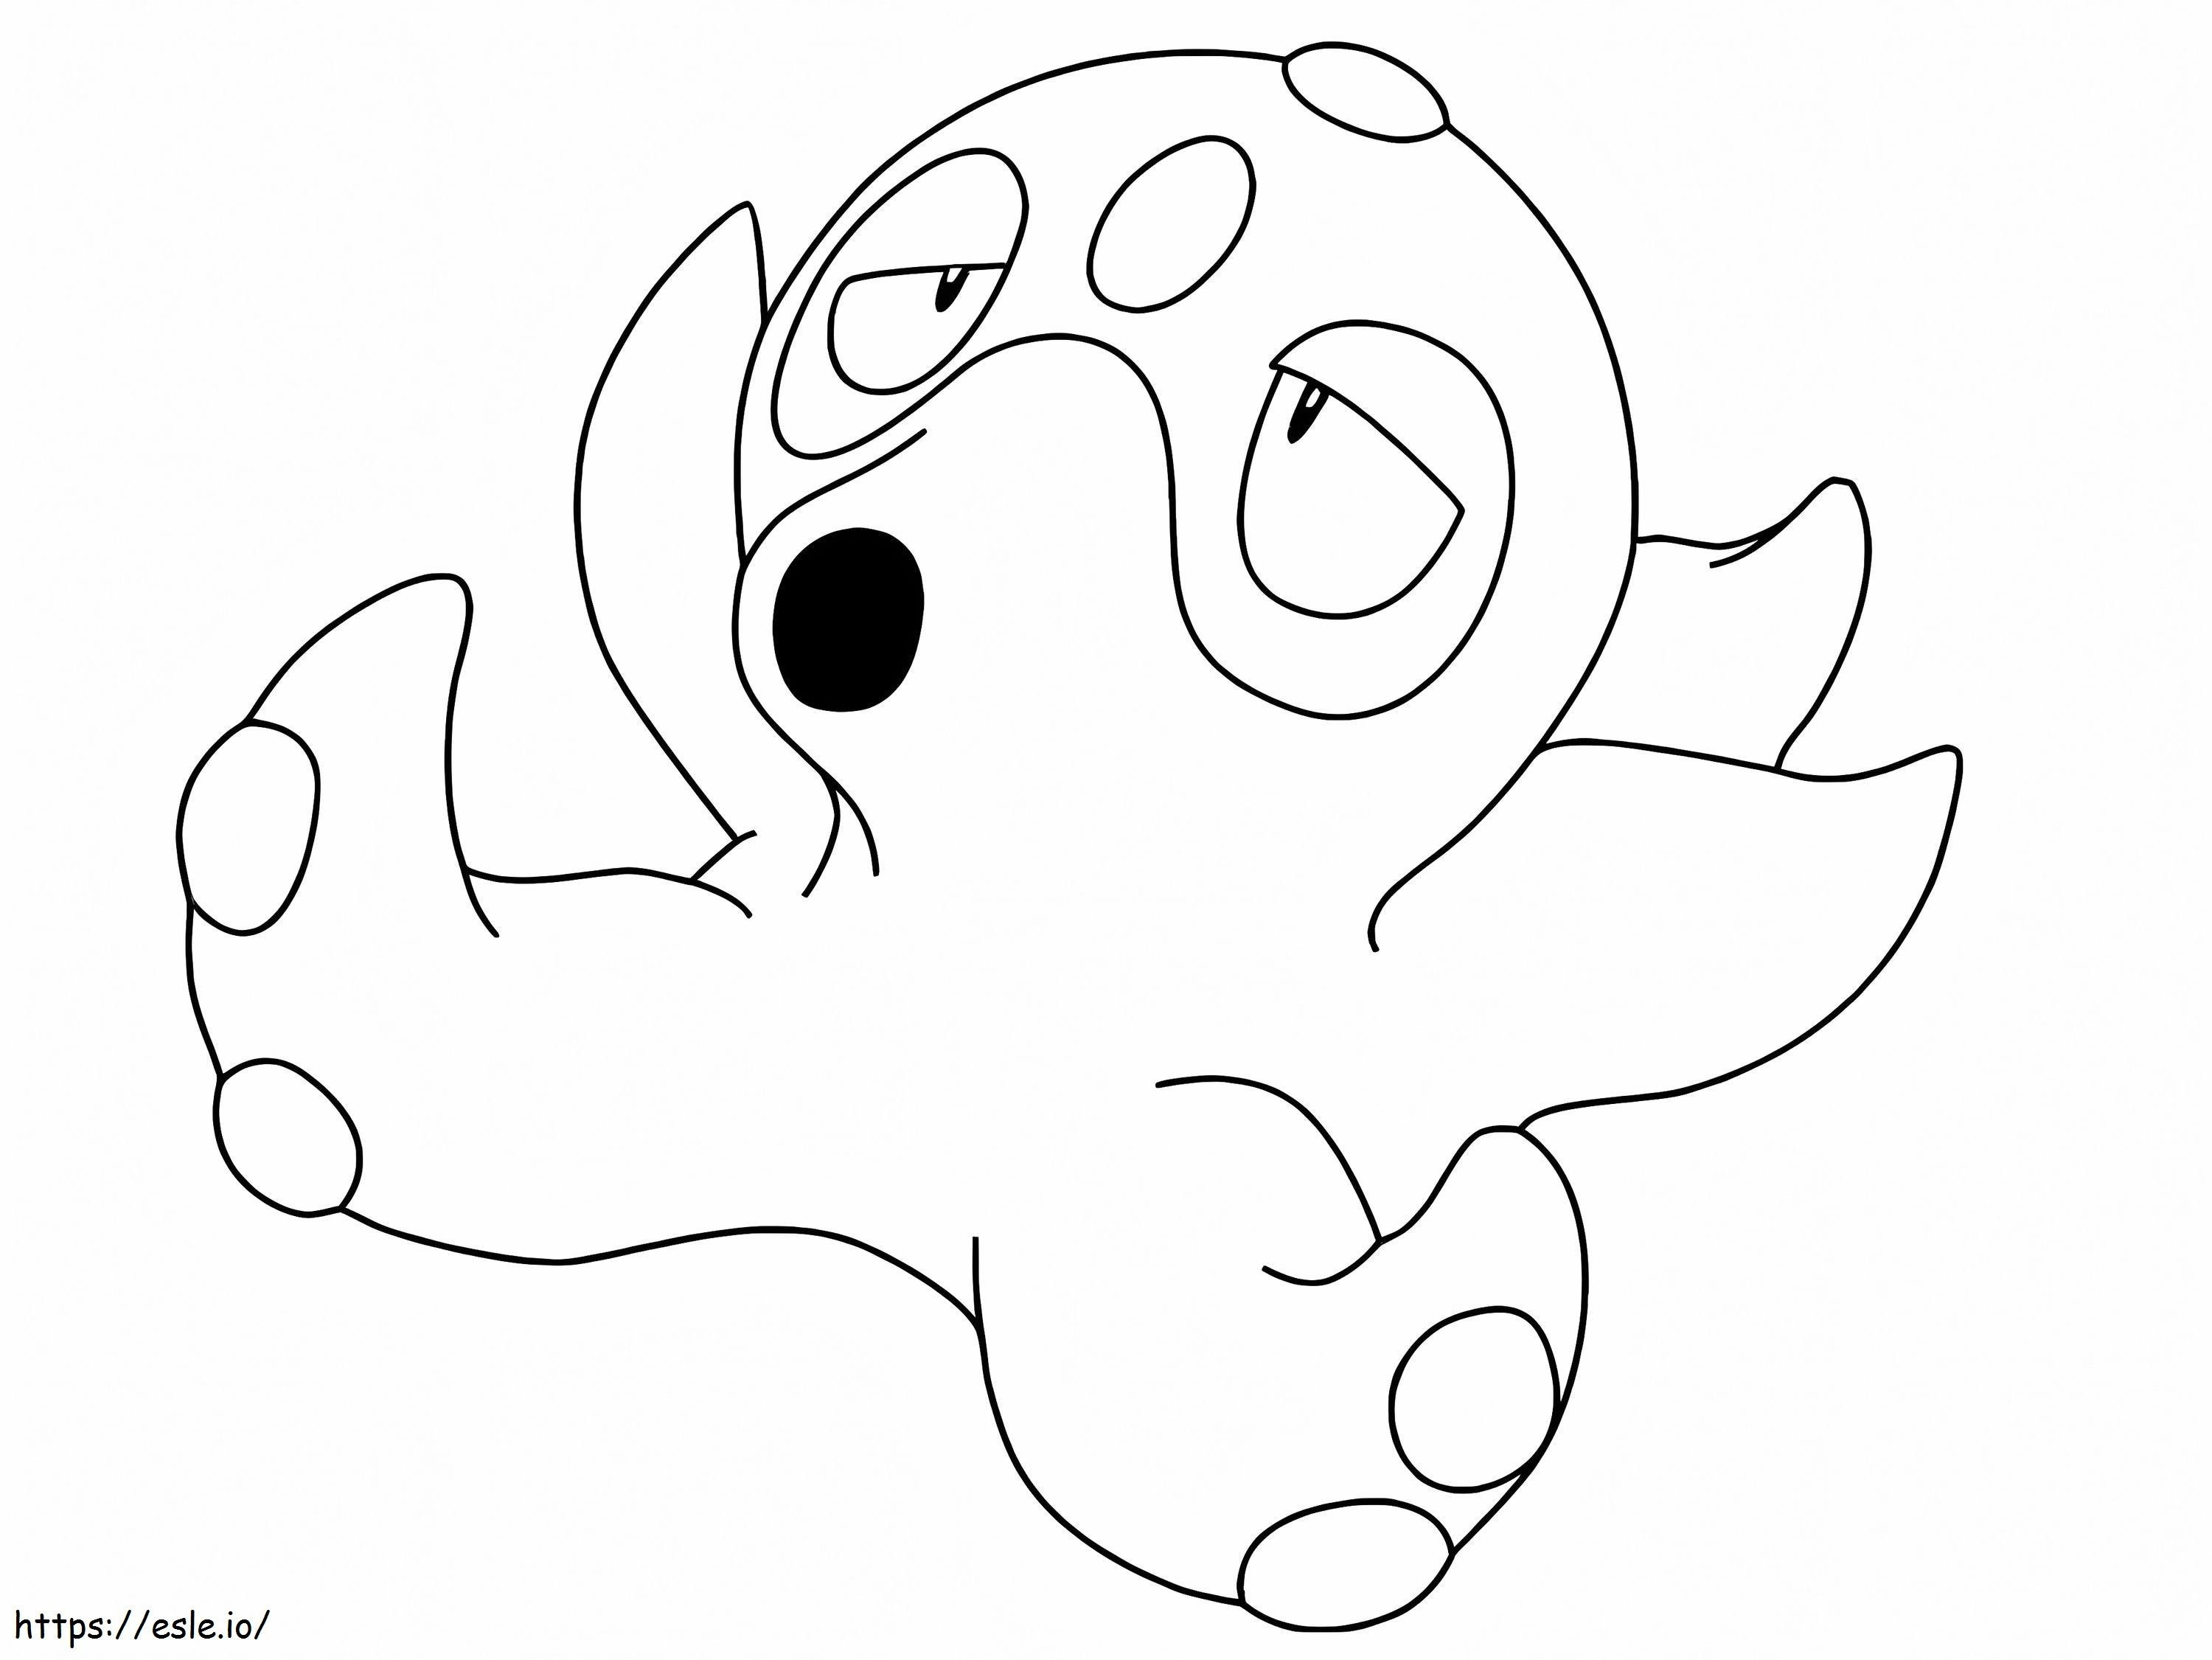 Coloriage Octillery pas Pokémon à imprimer dessin